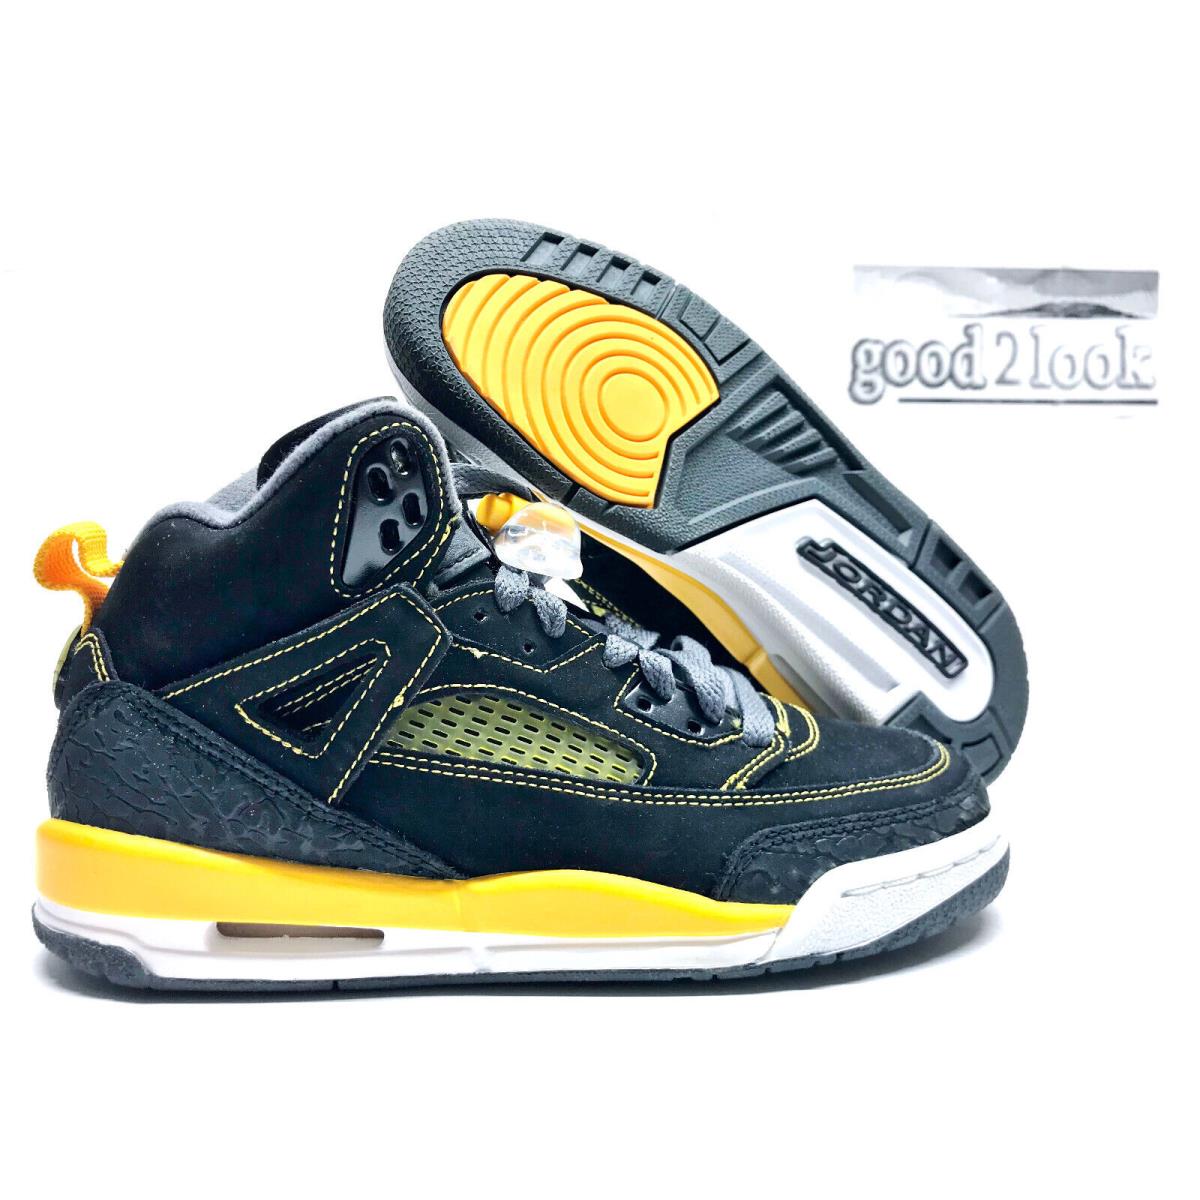 Nike Jordan Spizike GS Black/university Gold Size 4Y/WOMEN`S 5.5 317321-030